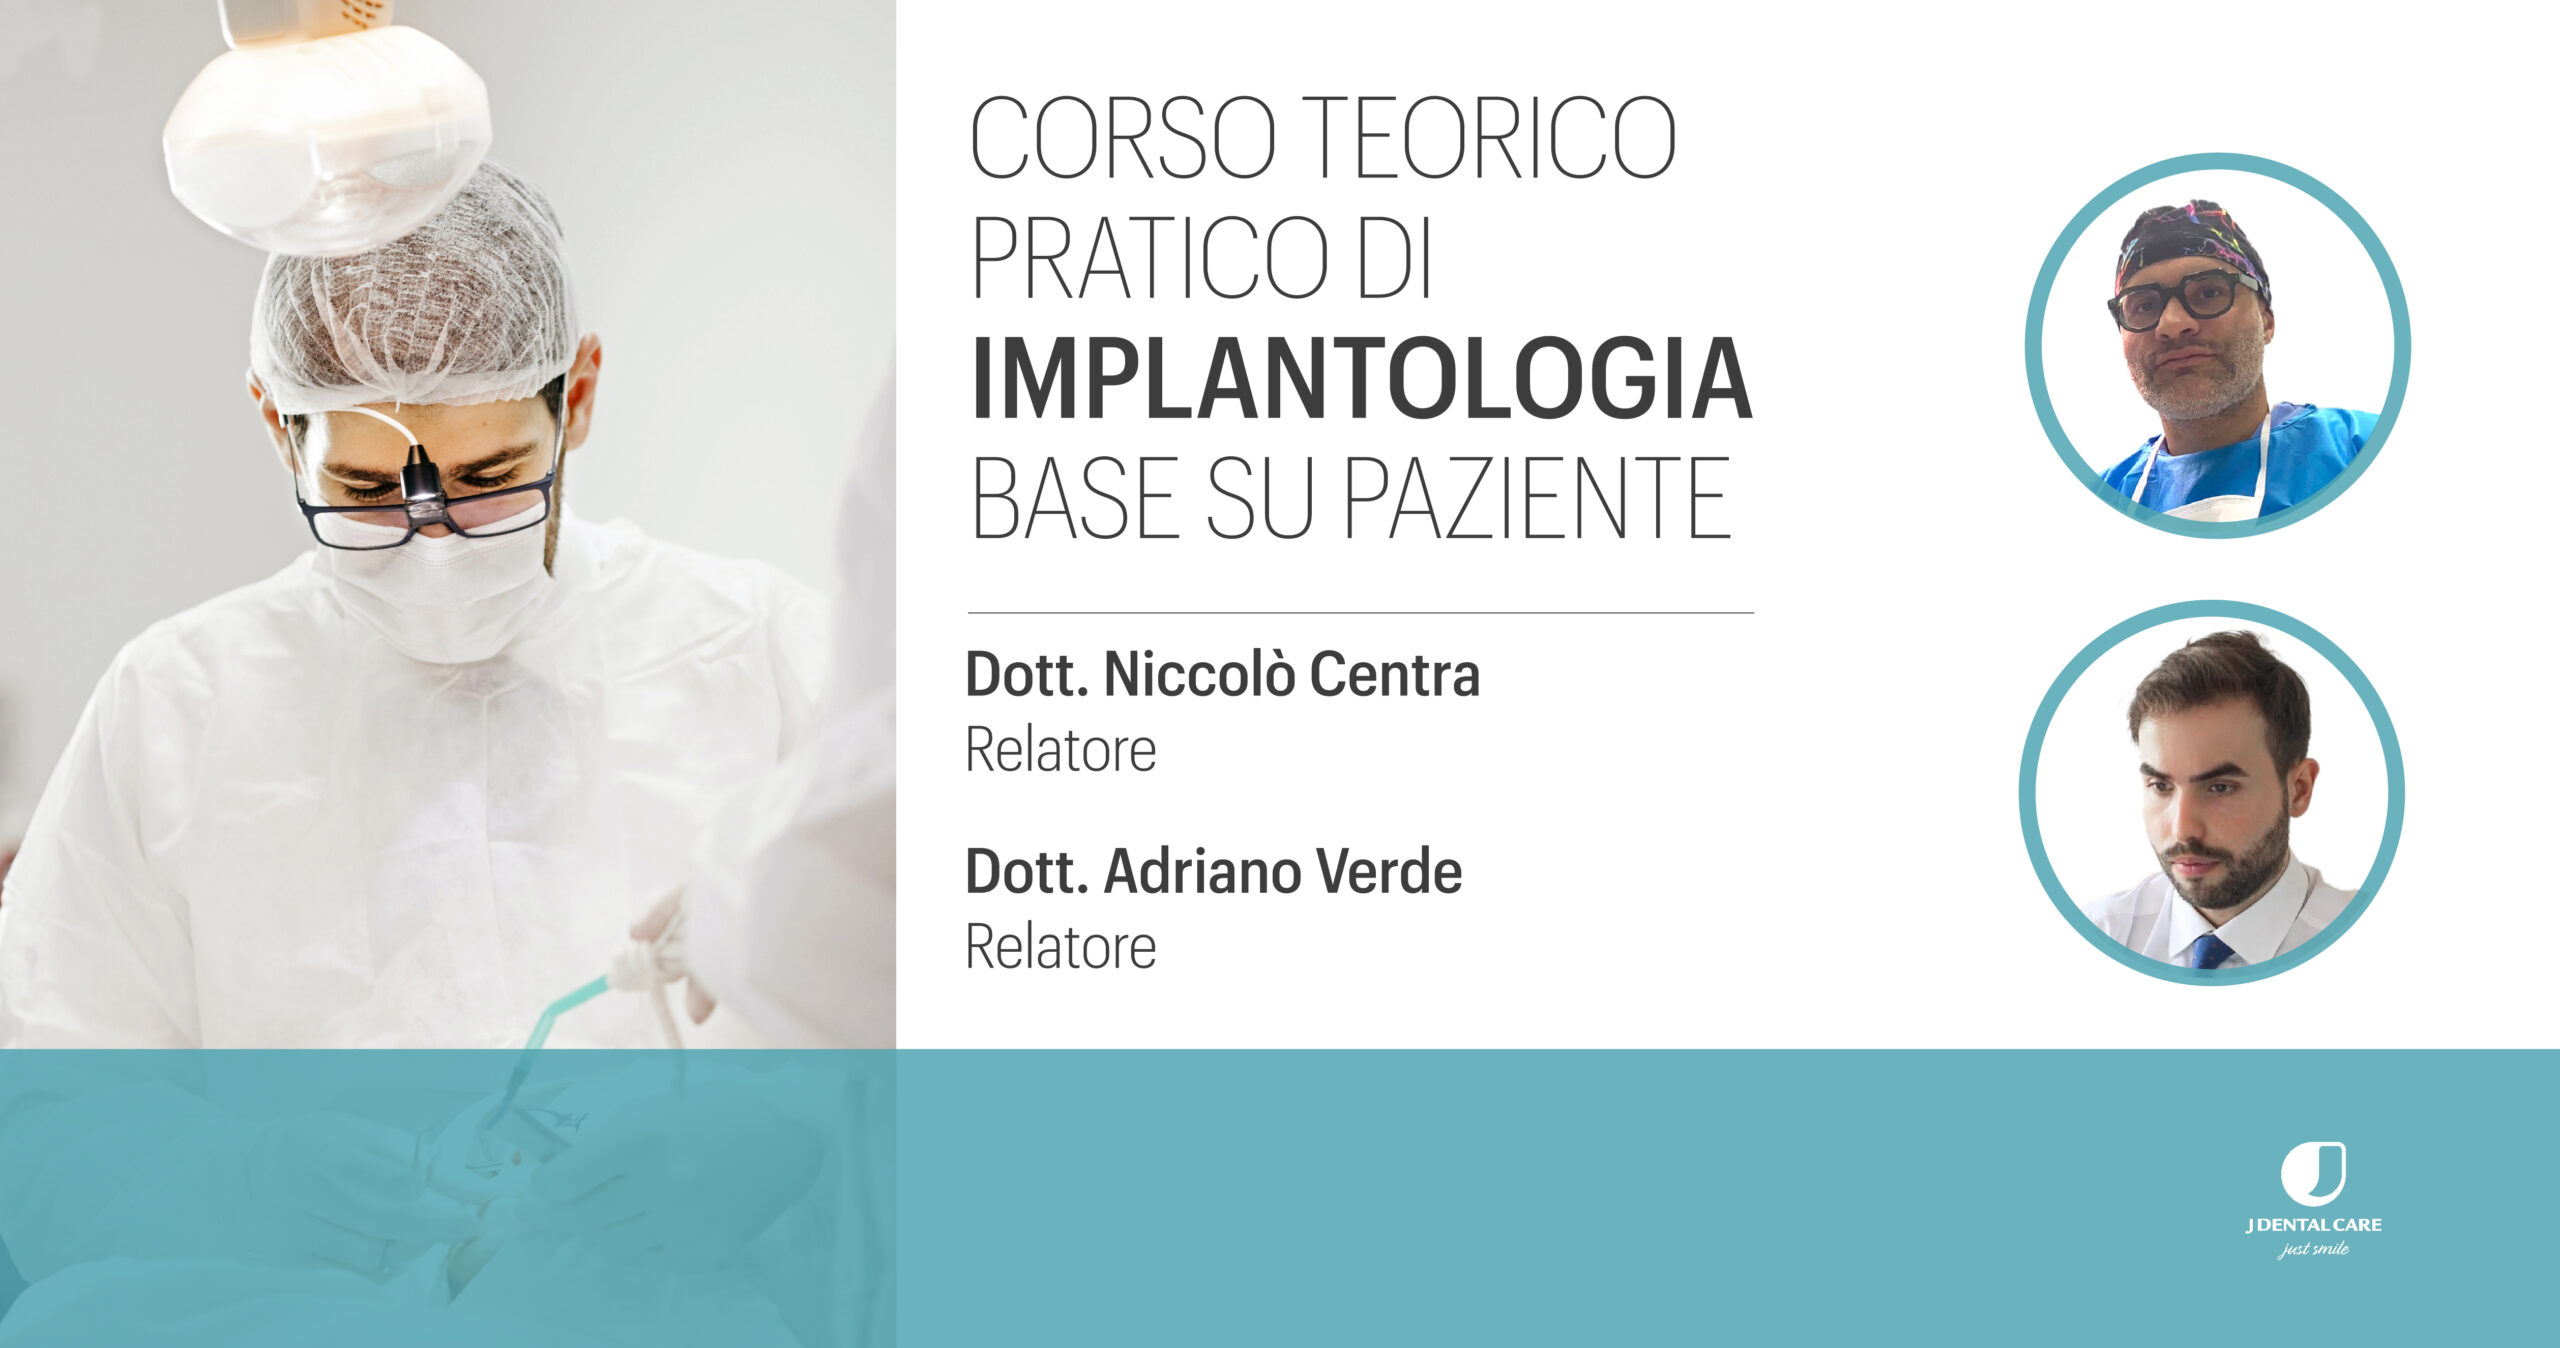 Corso teorico pratico di implantologia base su paziente